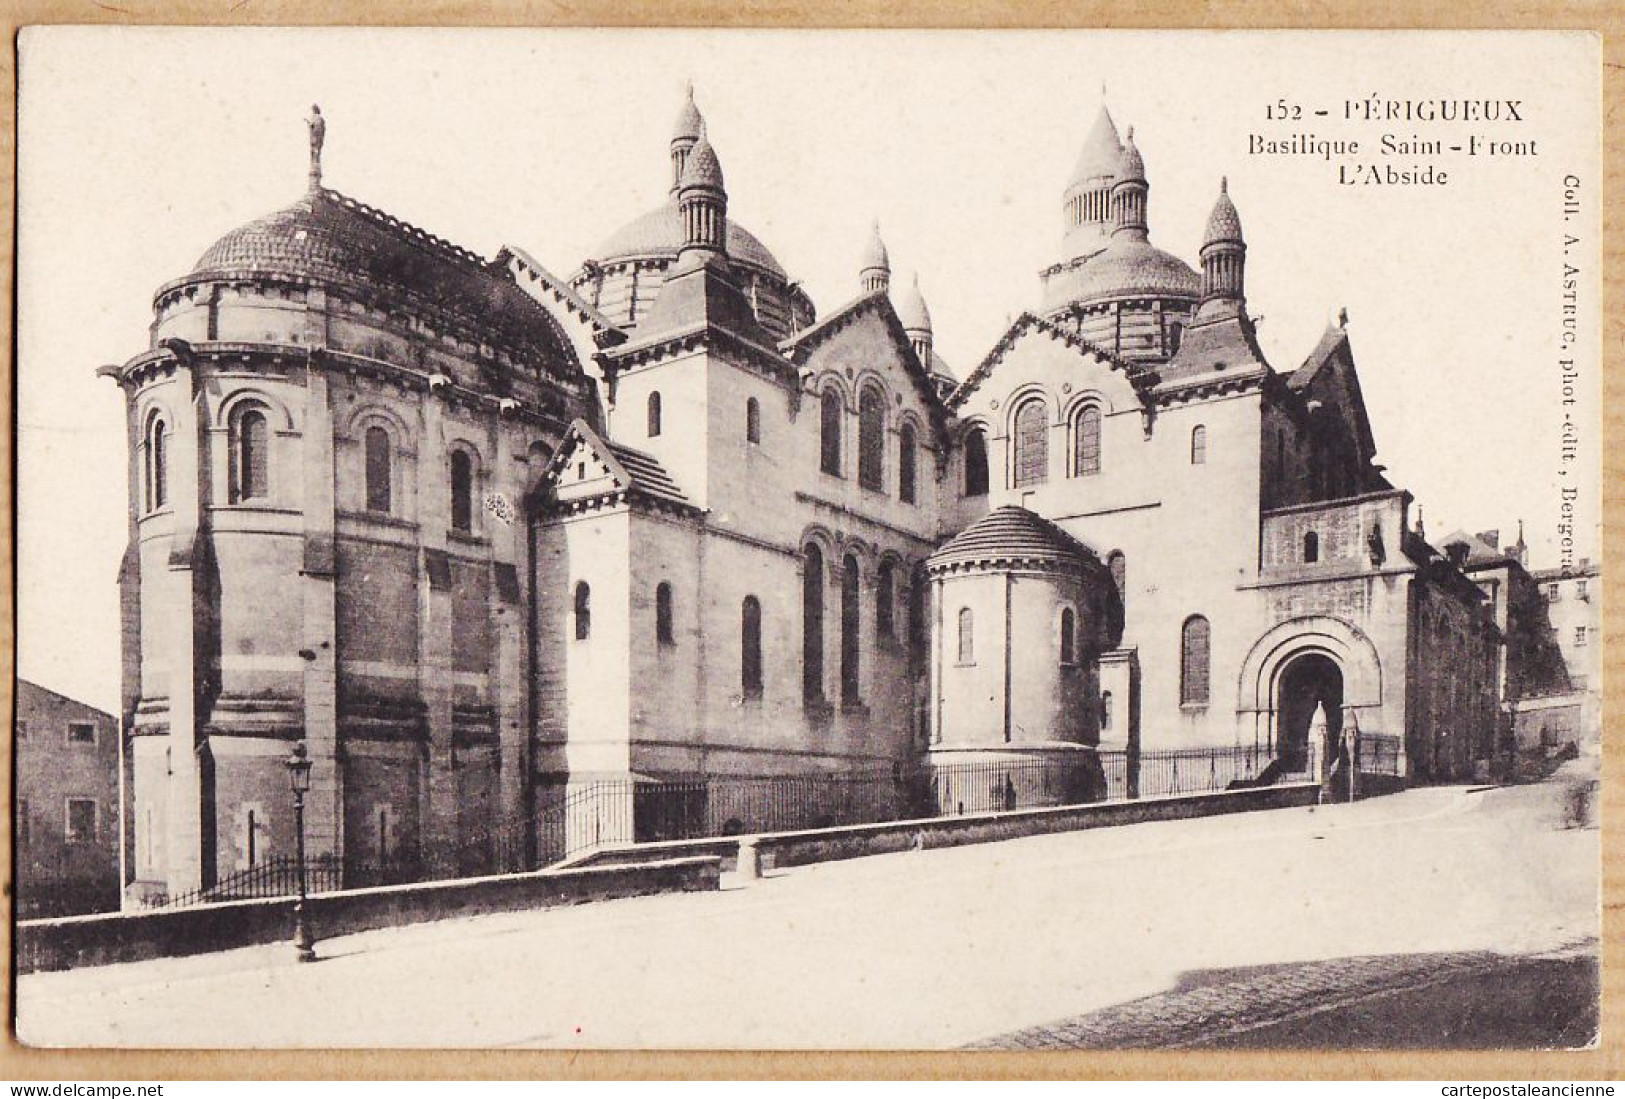 01255 / ⭐ PERIGUEUX Dordogne Abside Basilique SAINT-FRONT St 1910s Collection ASTRUC 152 Photo-Editeur BERGERAC - Périgueux